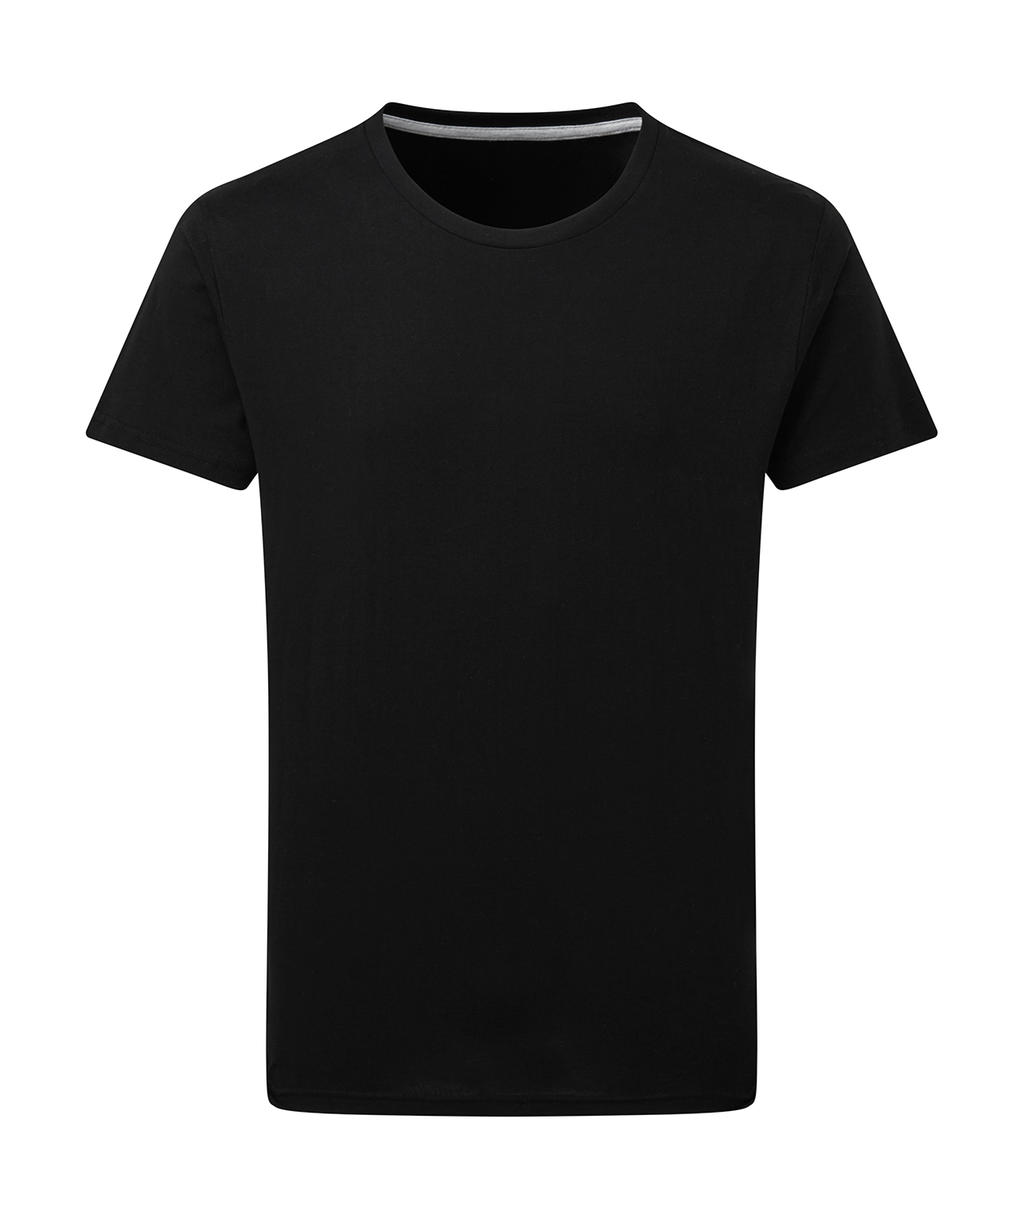 Dokonale potlačiteľné tričko bez štítku - dark black